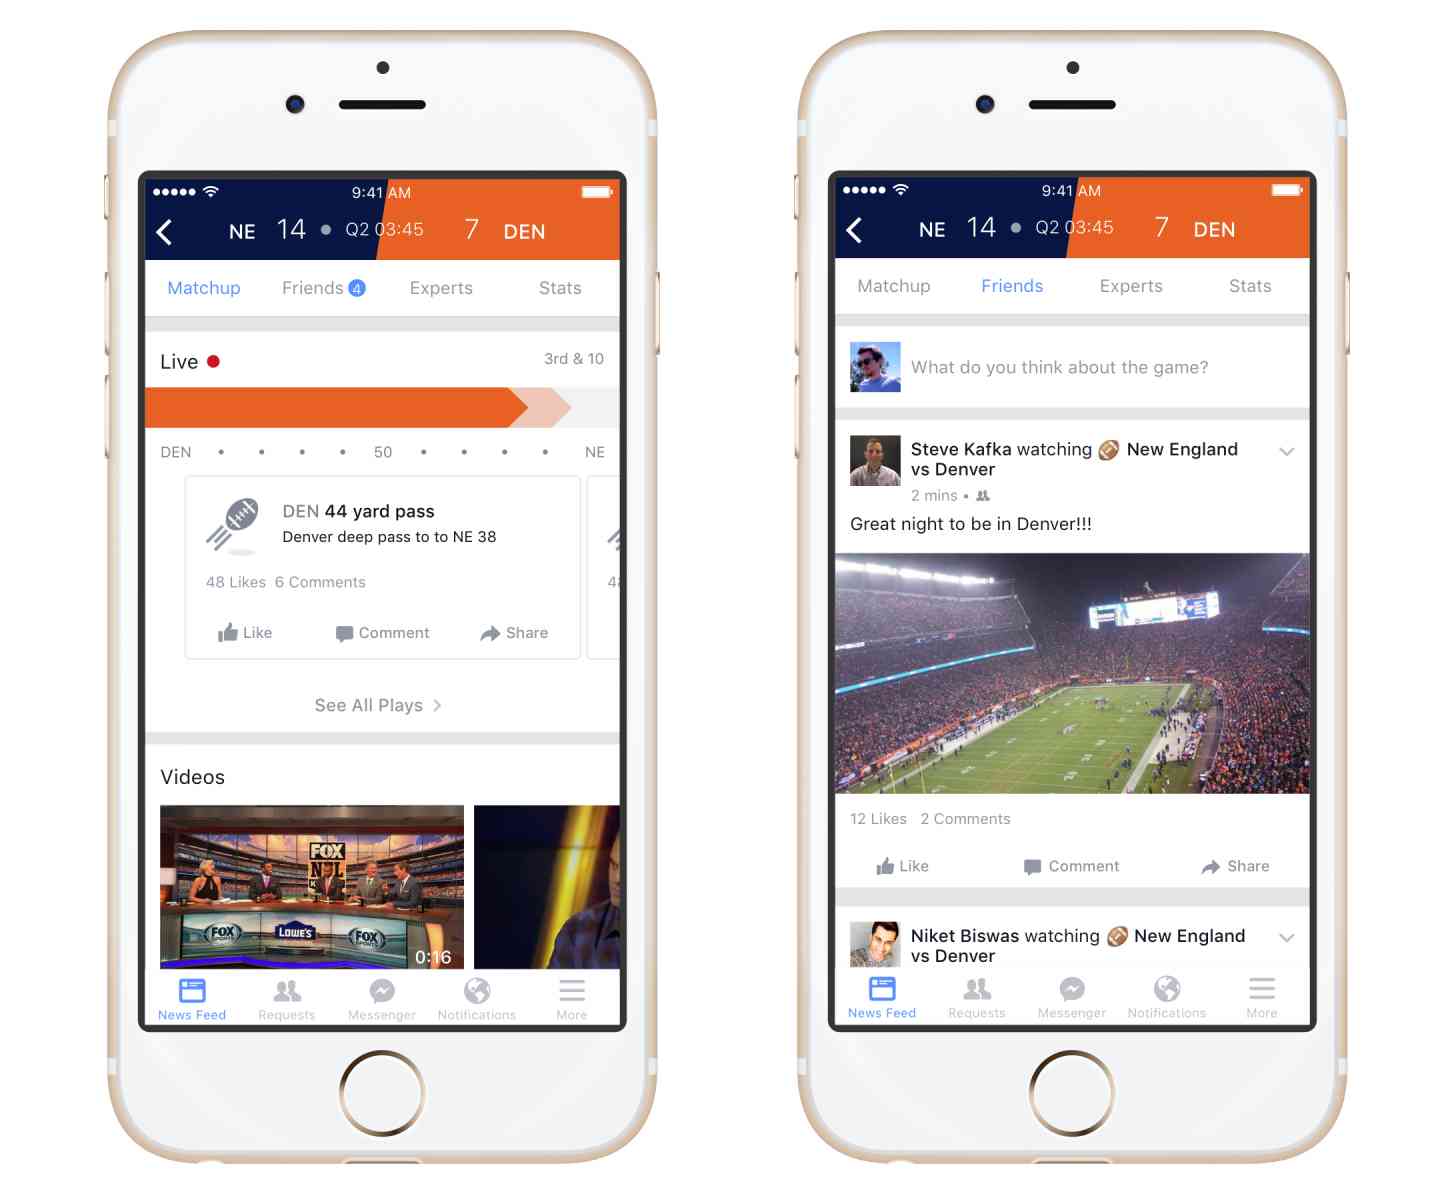 Facebook Sports Stadium iOS